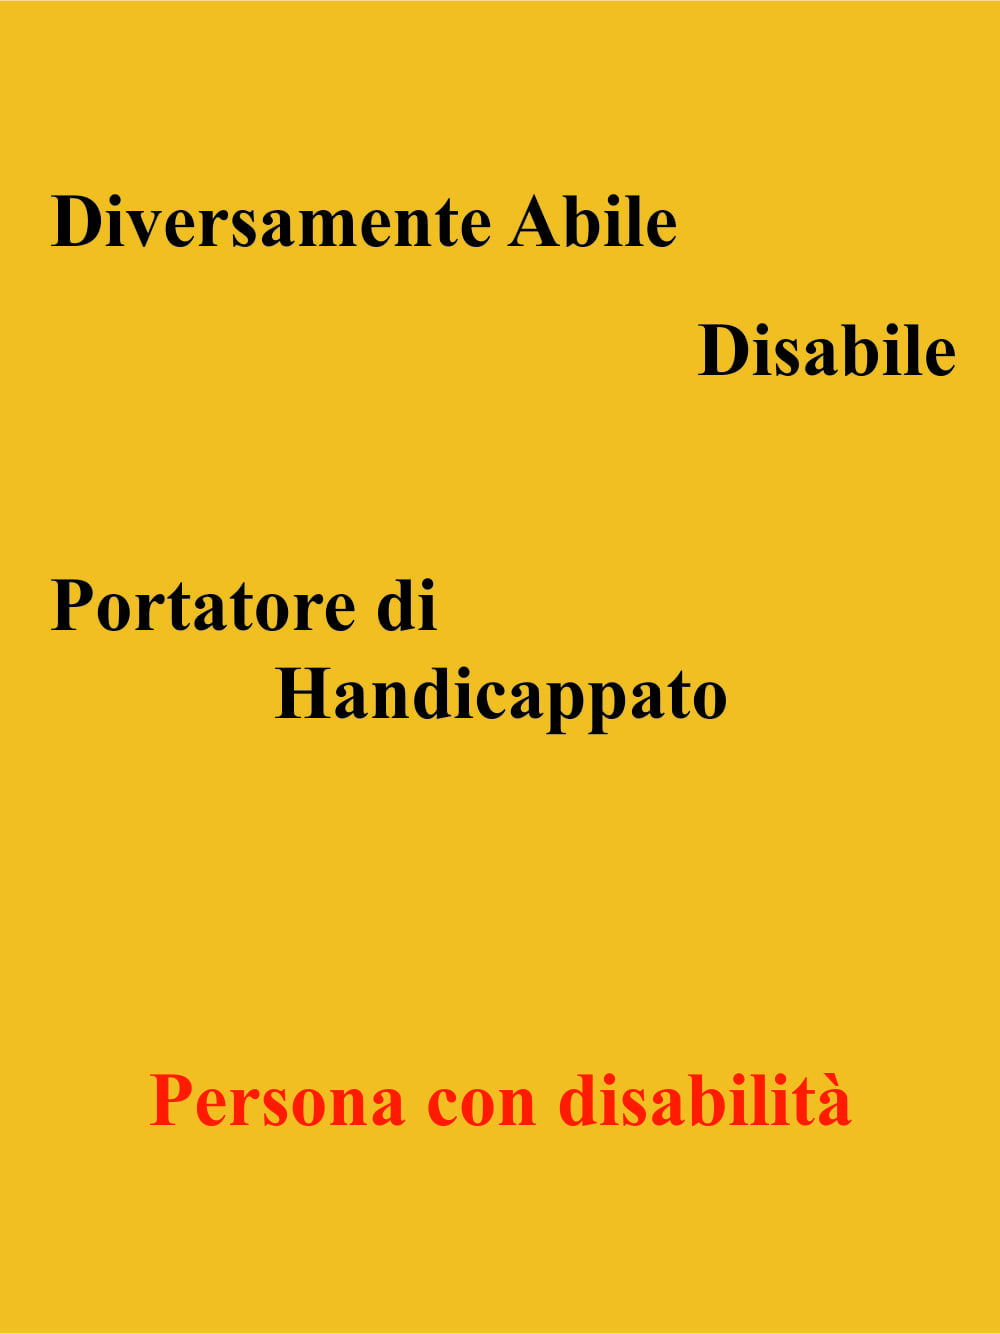 Diversamente abile, Disabile, Portatore di, Handicappato, Persona con disabilità.